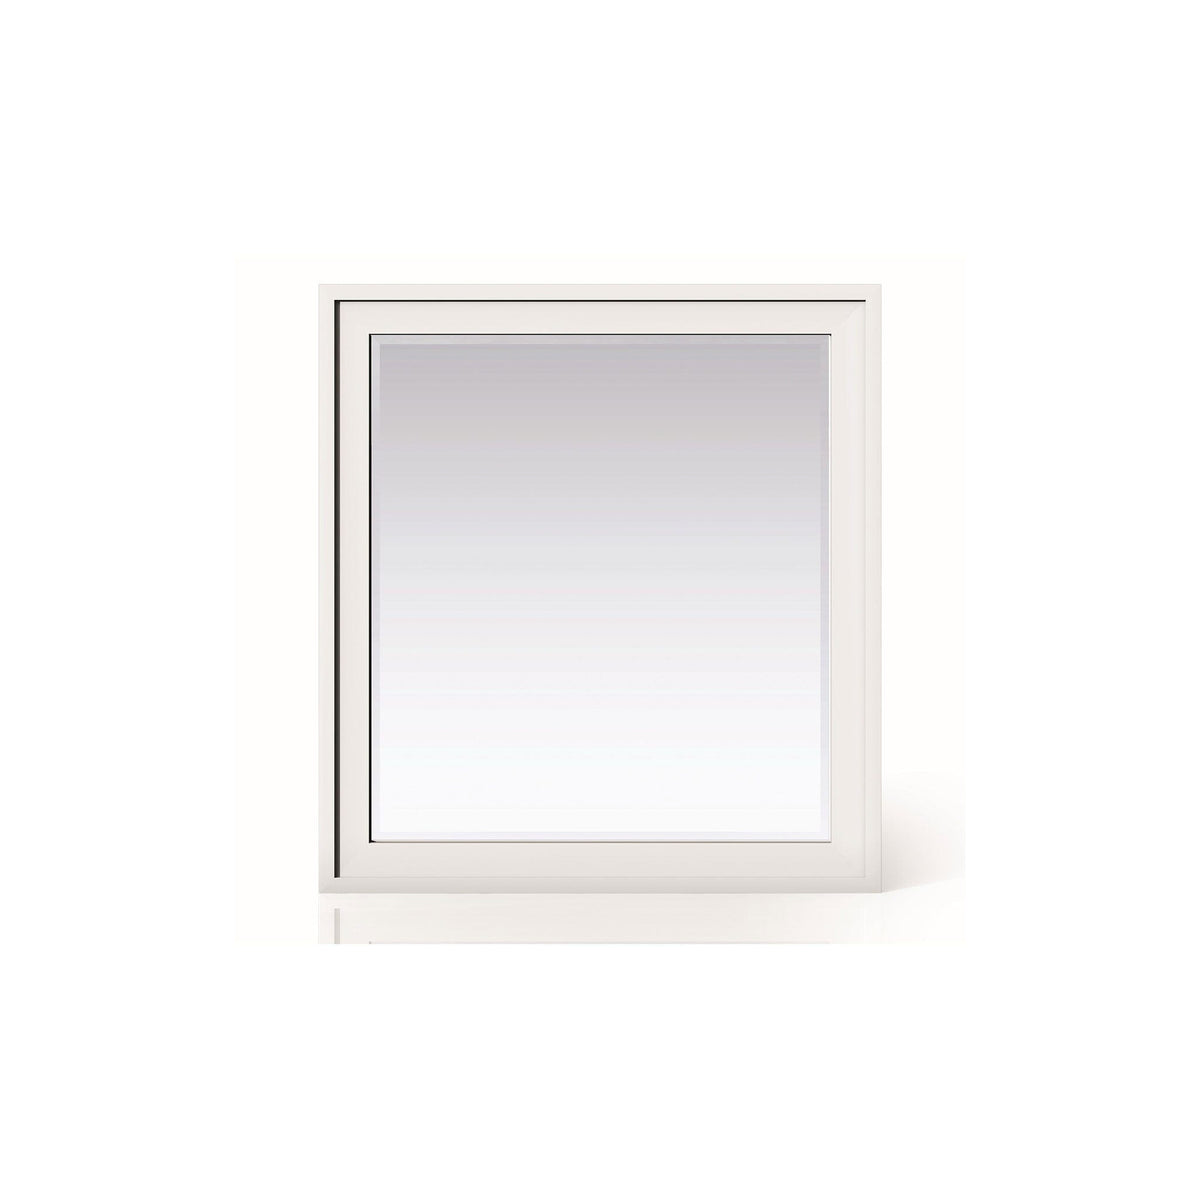 36" Addison Rectangular Mirror, Glossy White